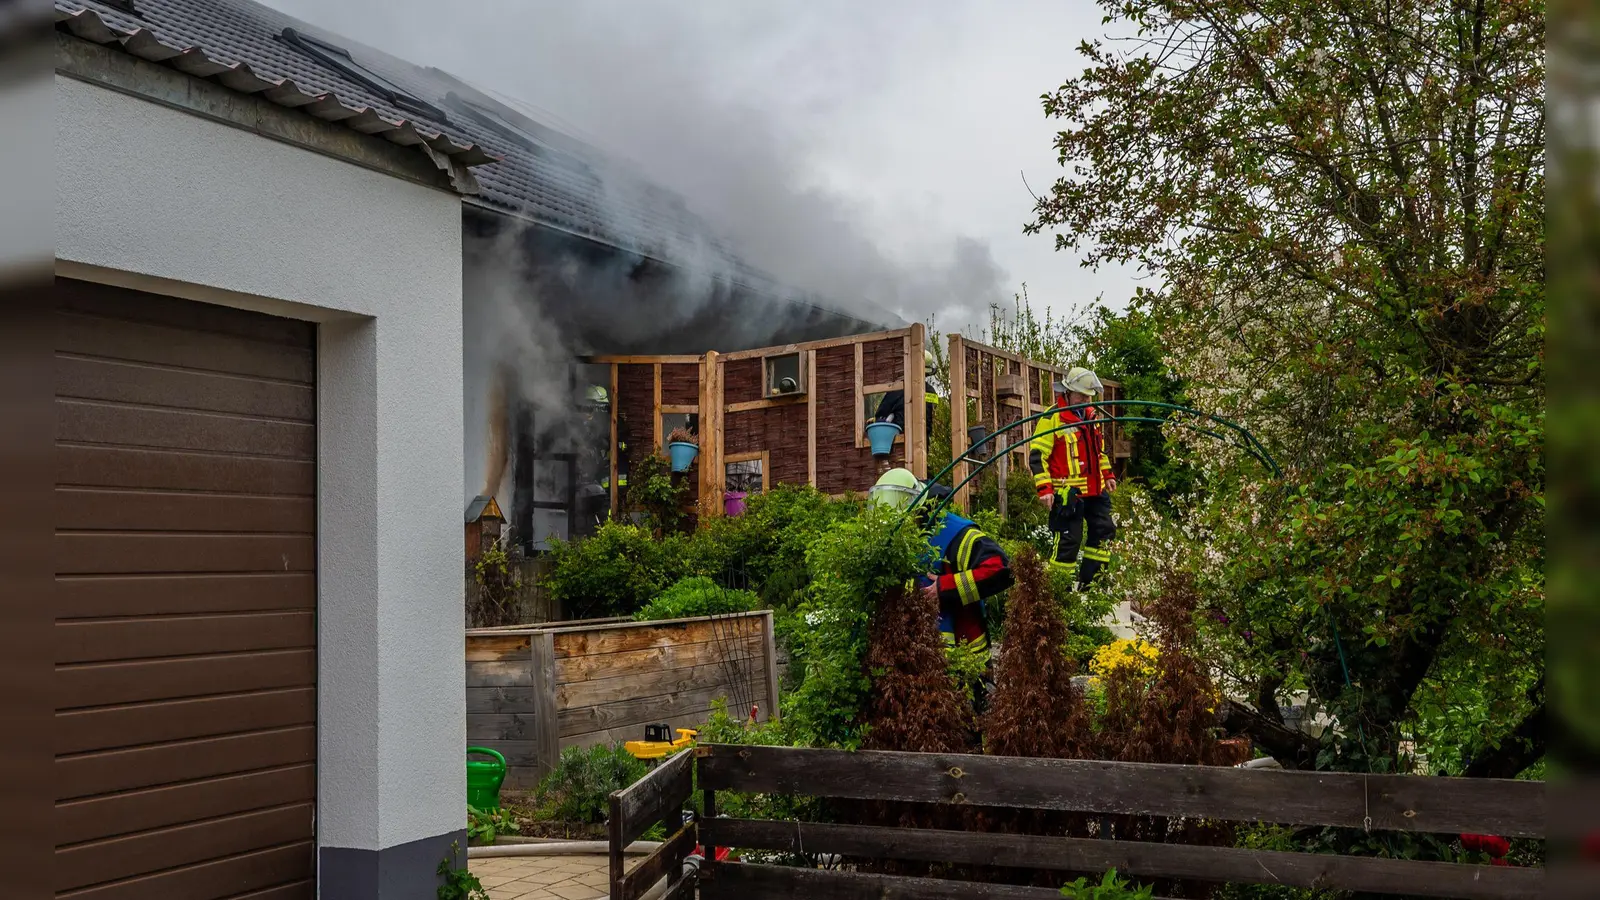 Auf der Terrasse des betroffenen Hauses qualmte es kräftig, doch die Feuerwehrkräfte konnten ein Übergreifen der Flammen aufs Dach verhindern und den Brand rasch löschen. (Foto: Johann Schmidt)